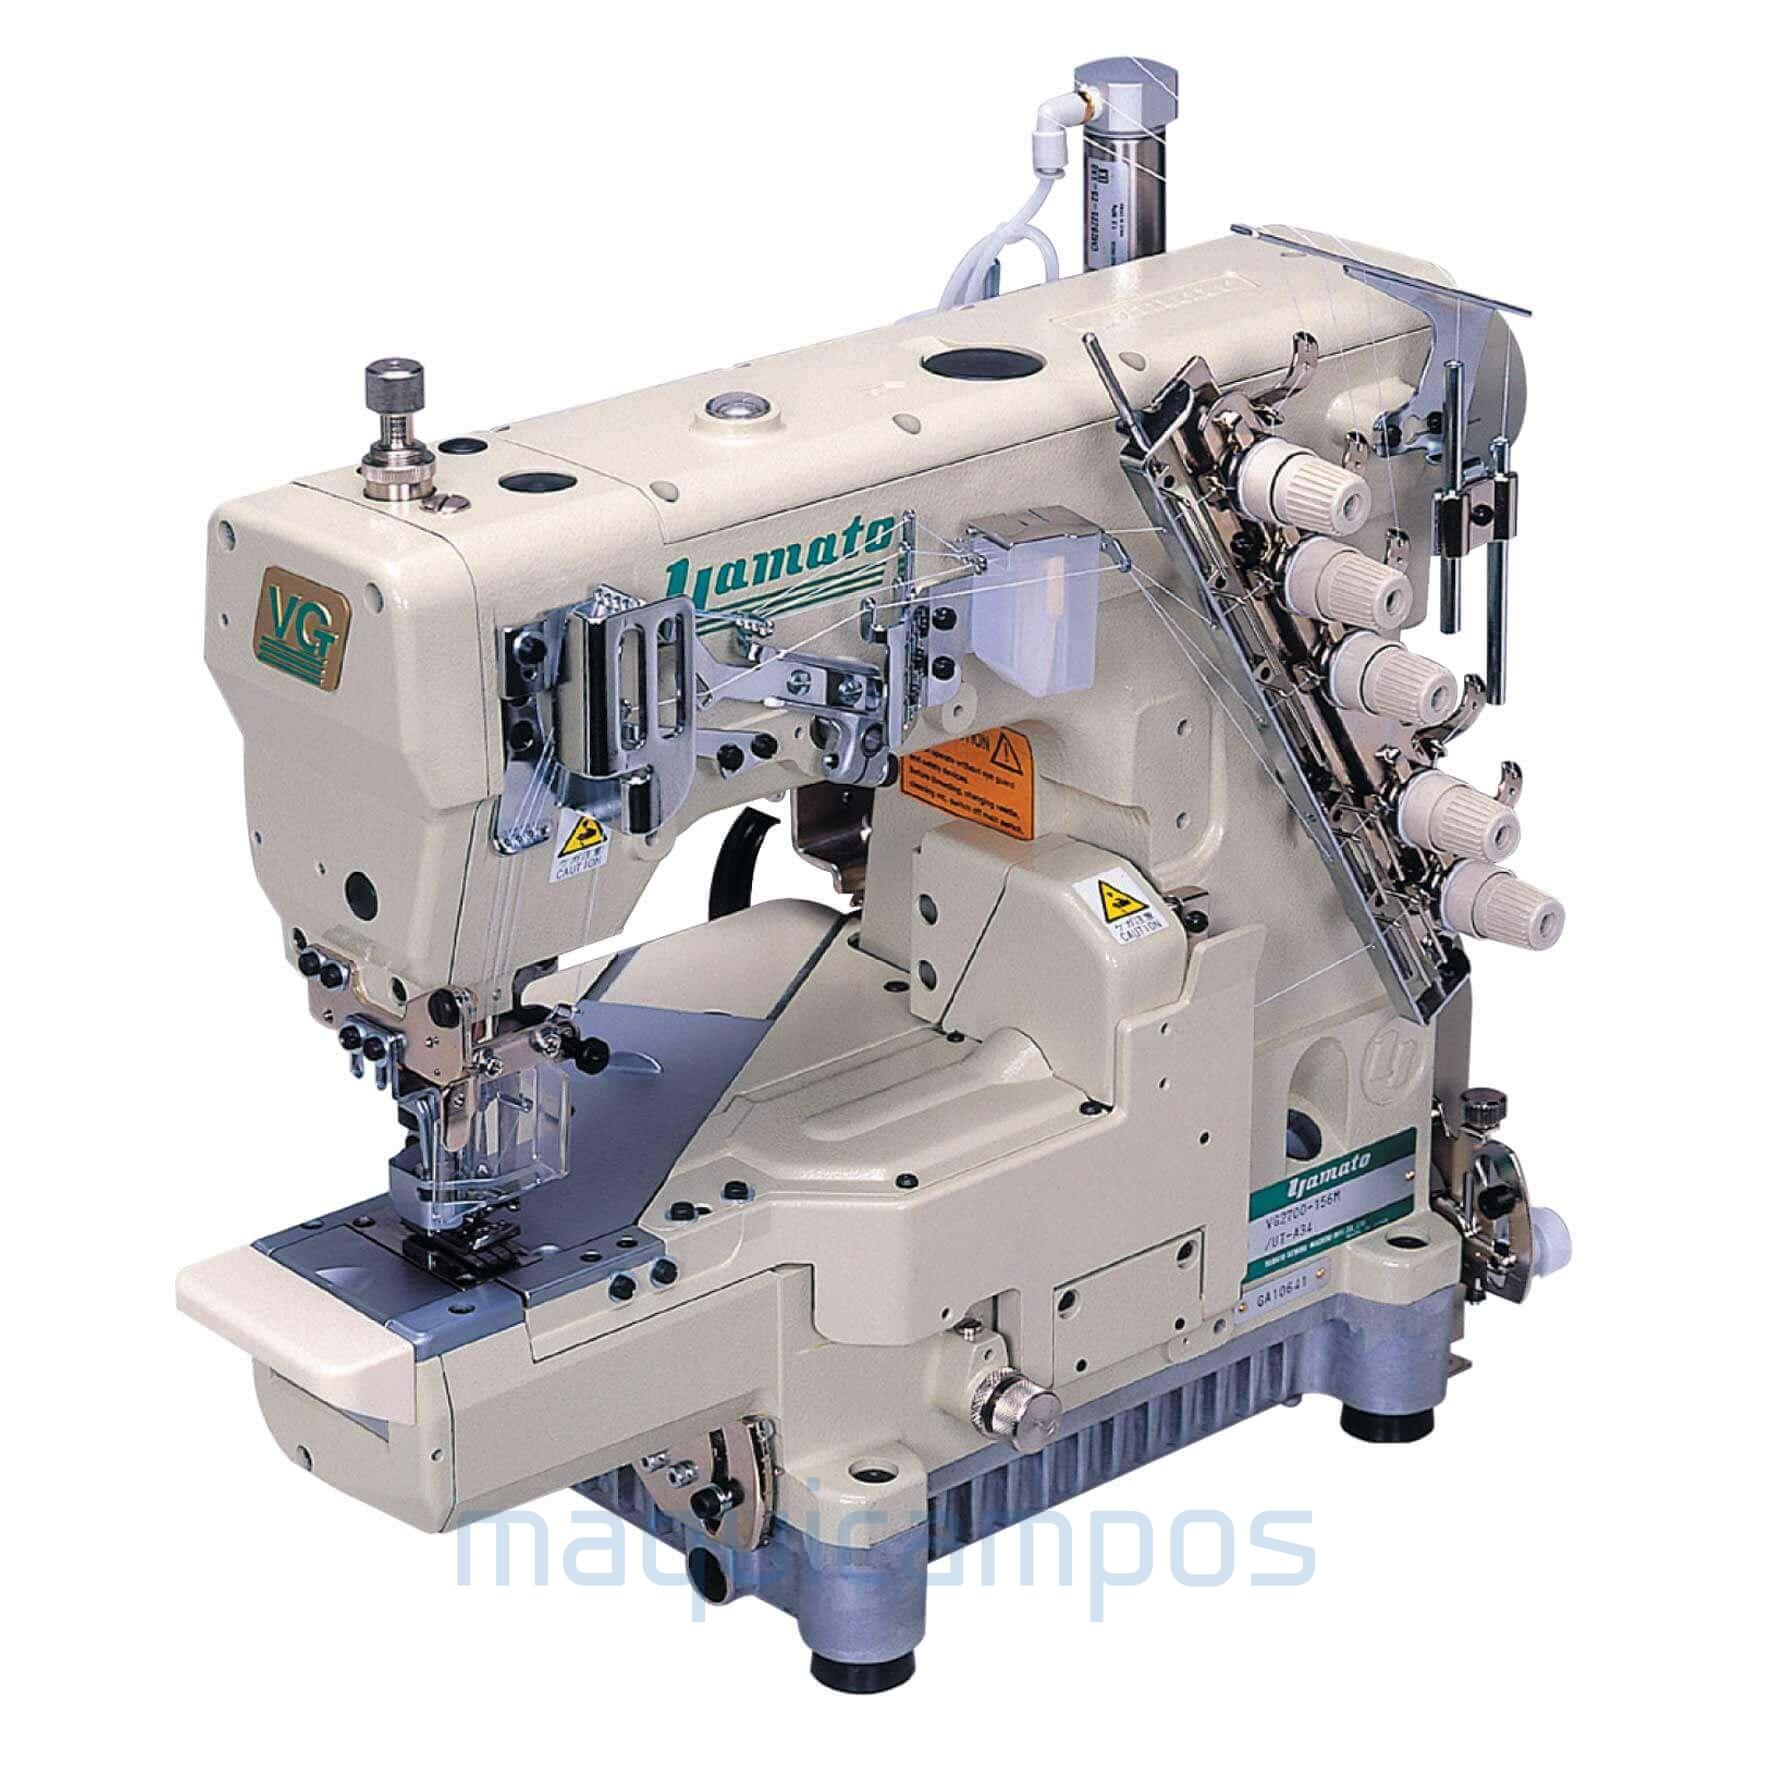 Yamato VG2700 Interlock Sewing Machine